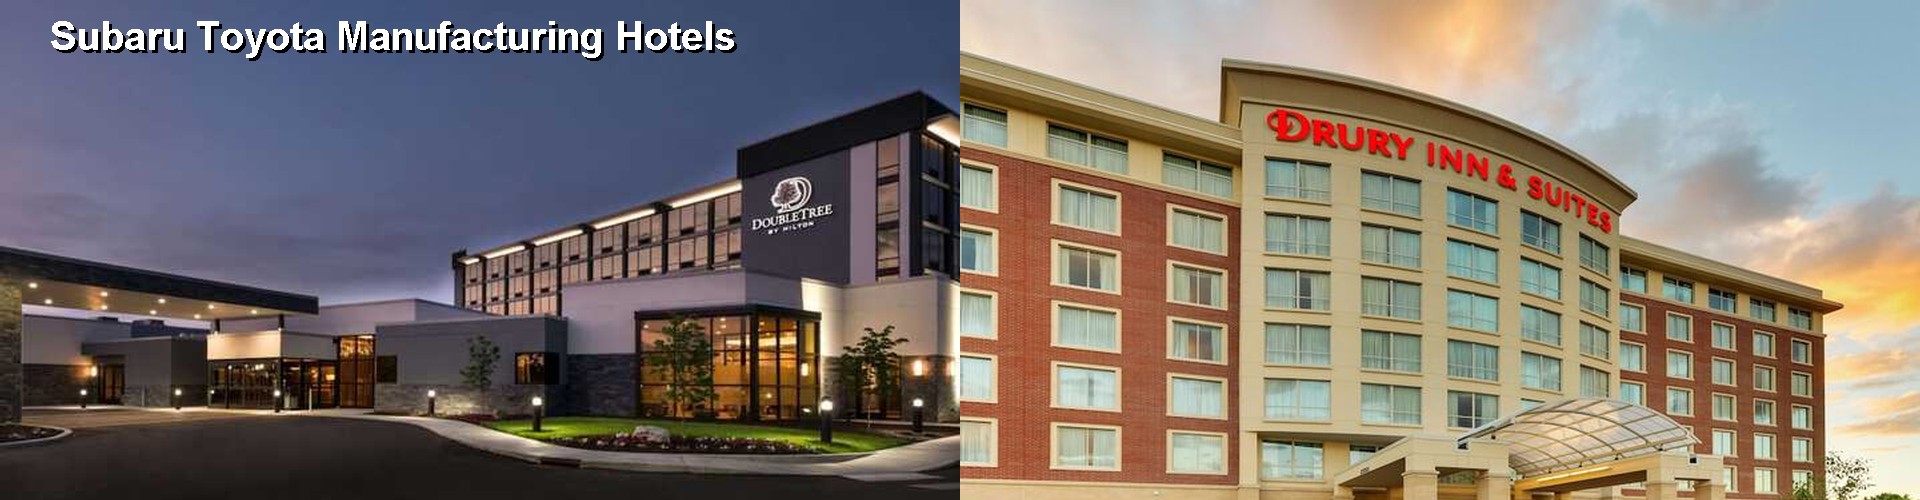 5 Best Hotels near Subaru Toyota Manufacturing